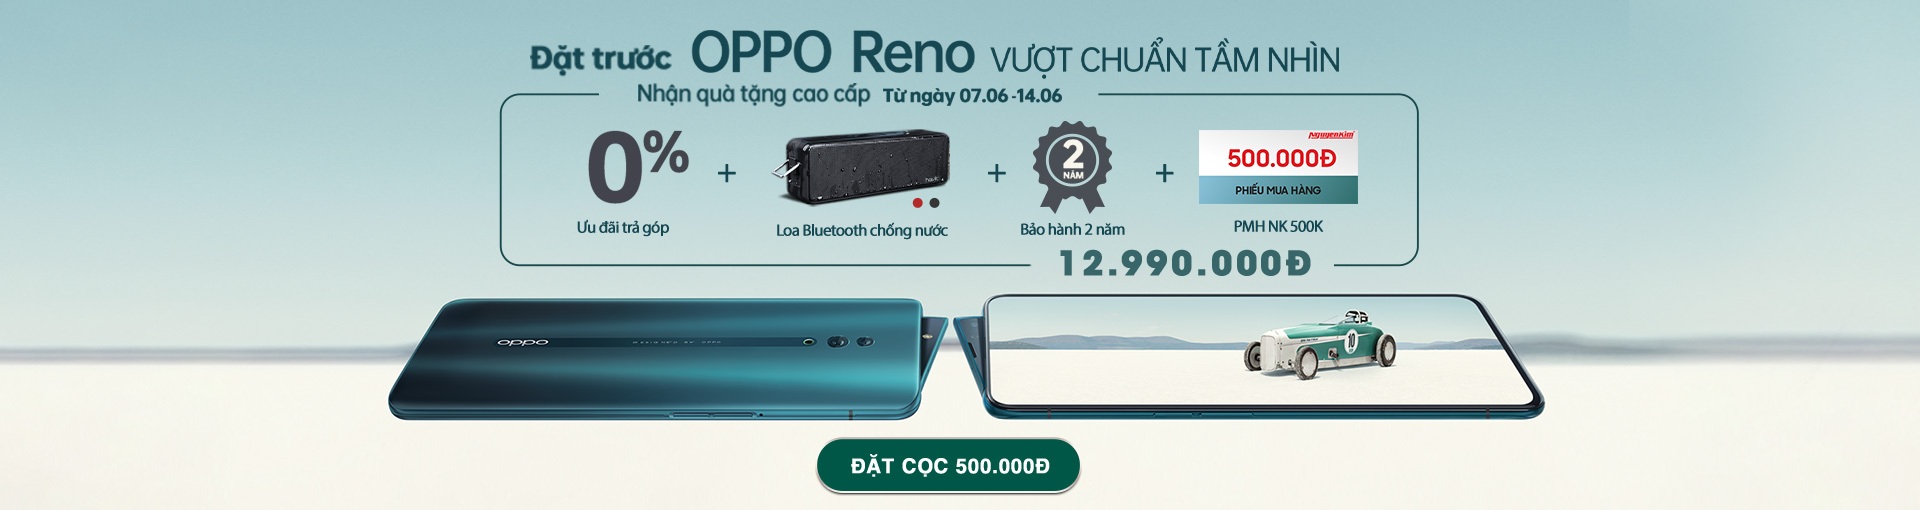 Oppo-reno-1920x510